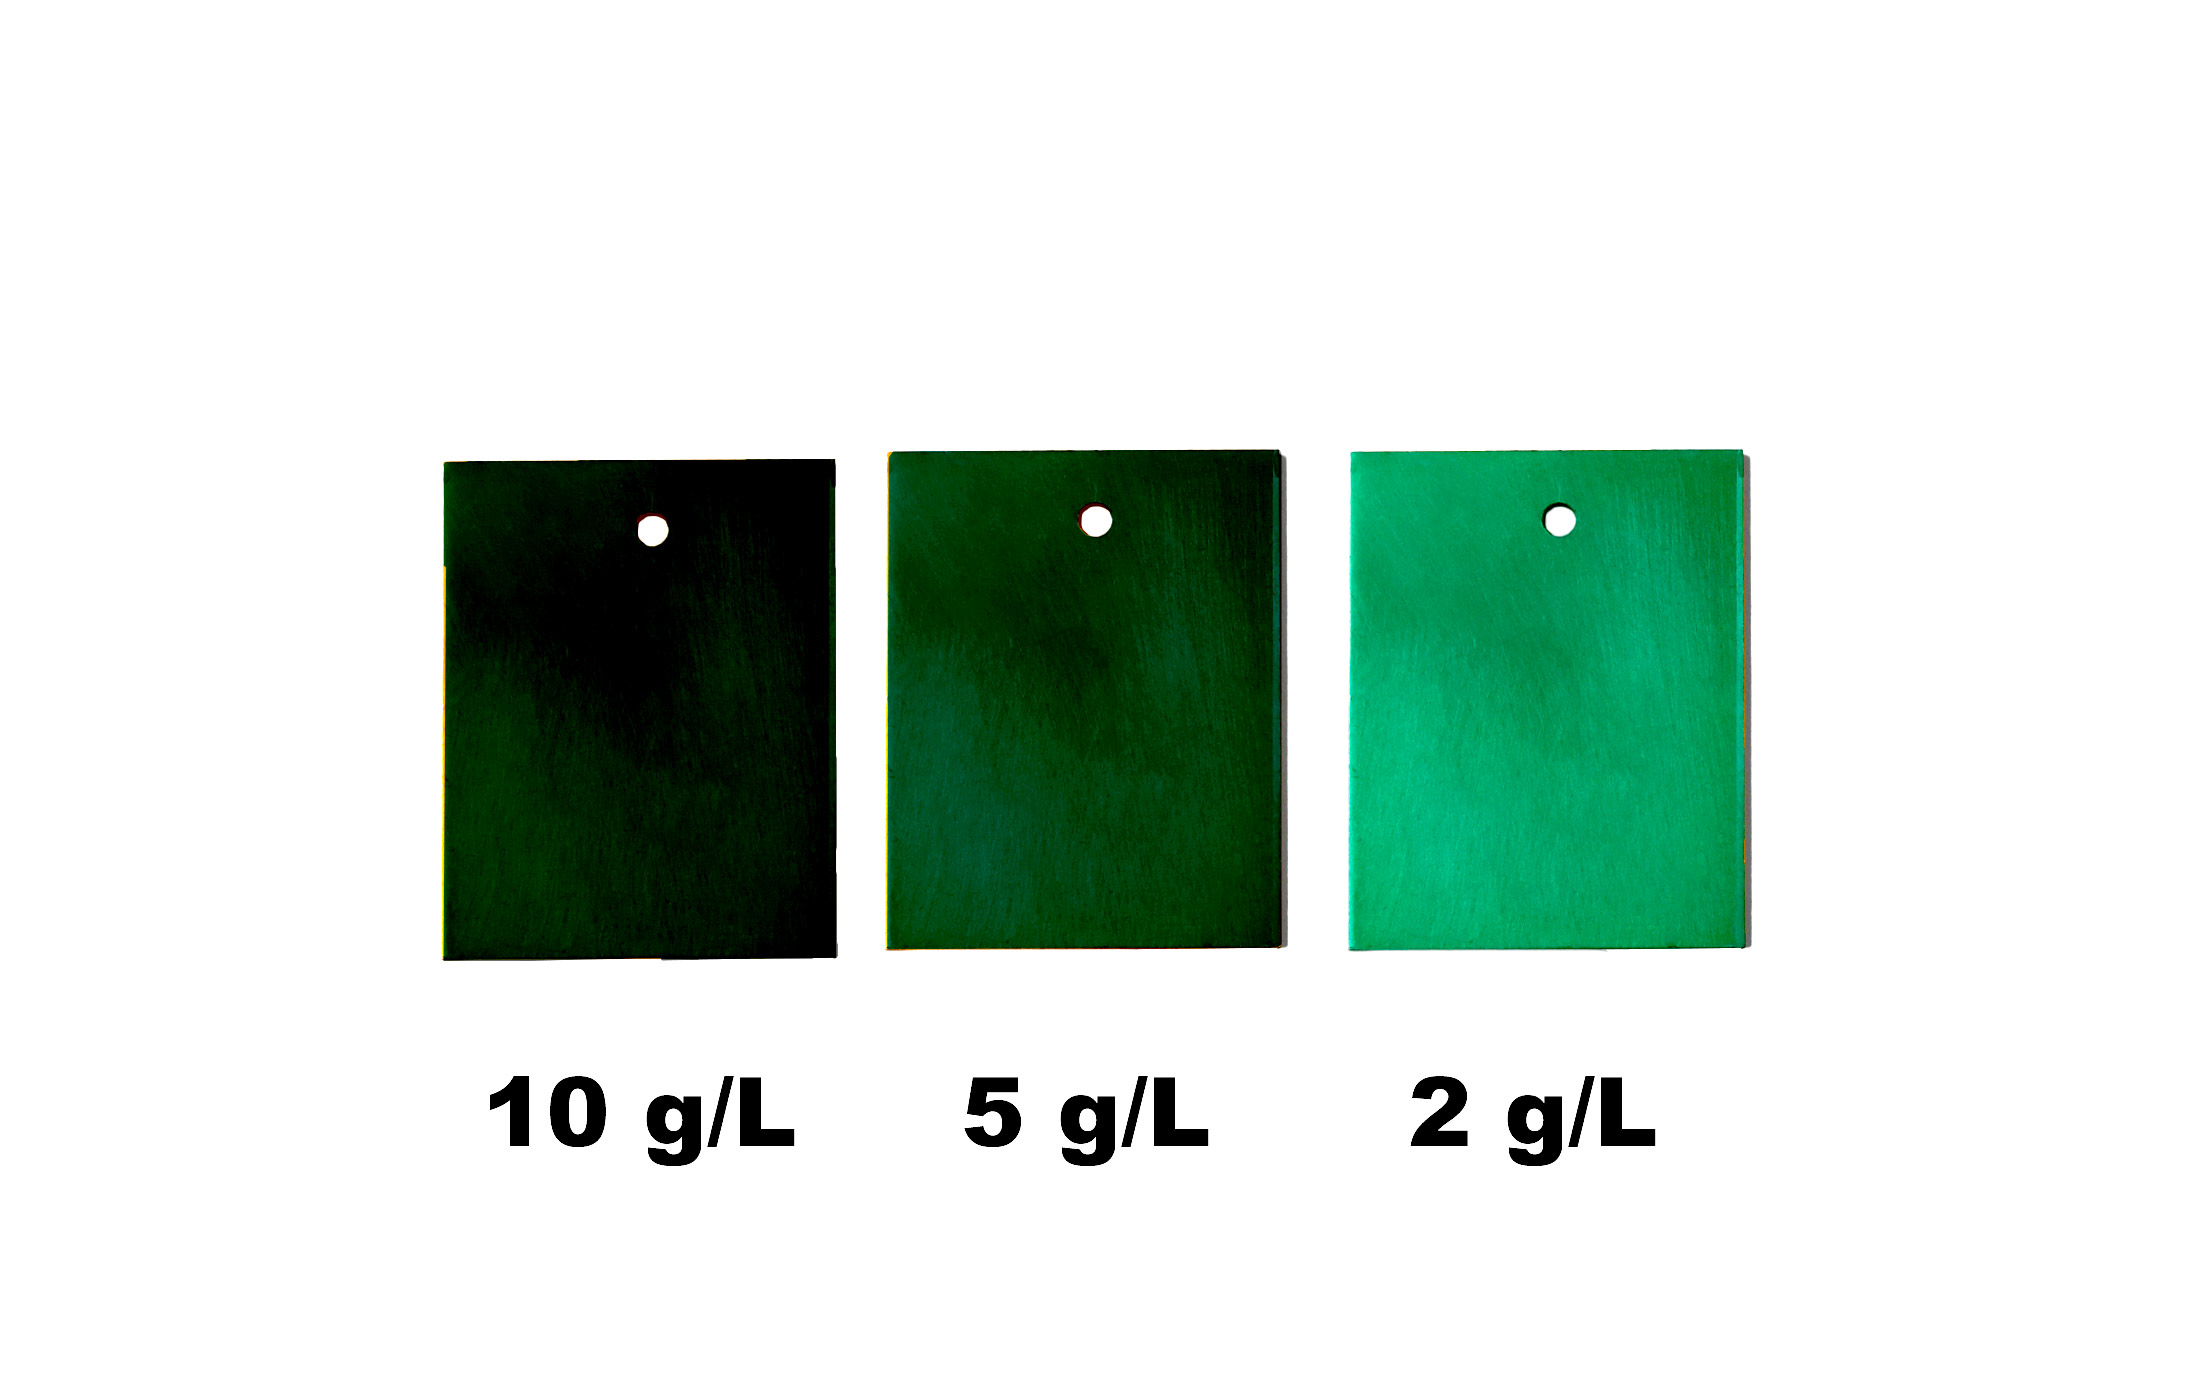 Alu selber grün eloxieren - Eloxal Farbkarte Grün - Grün eloxierte Bleche